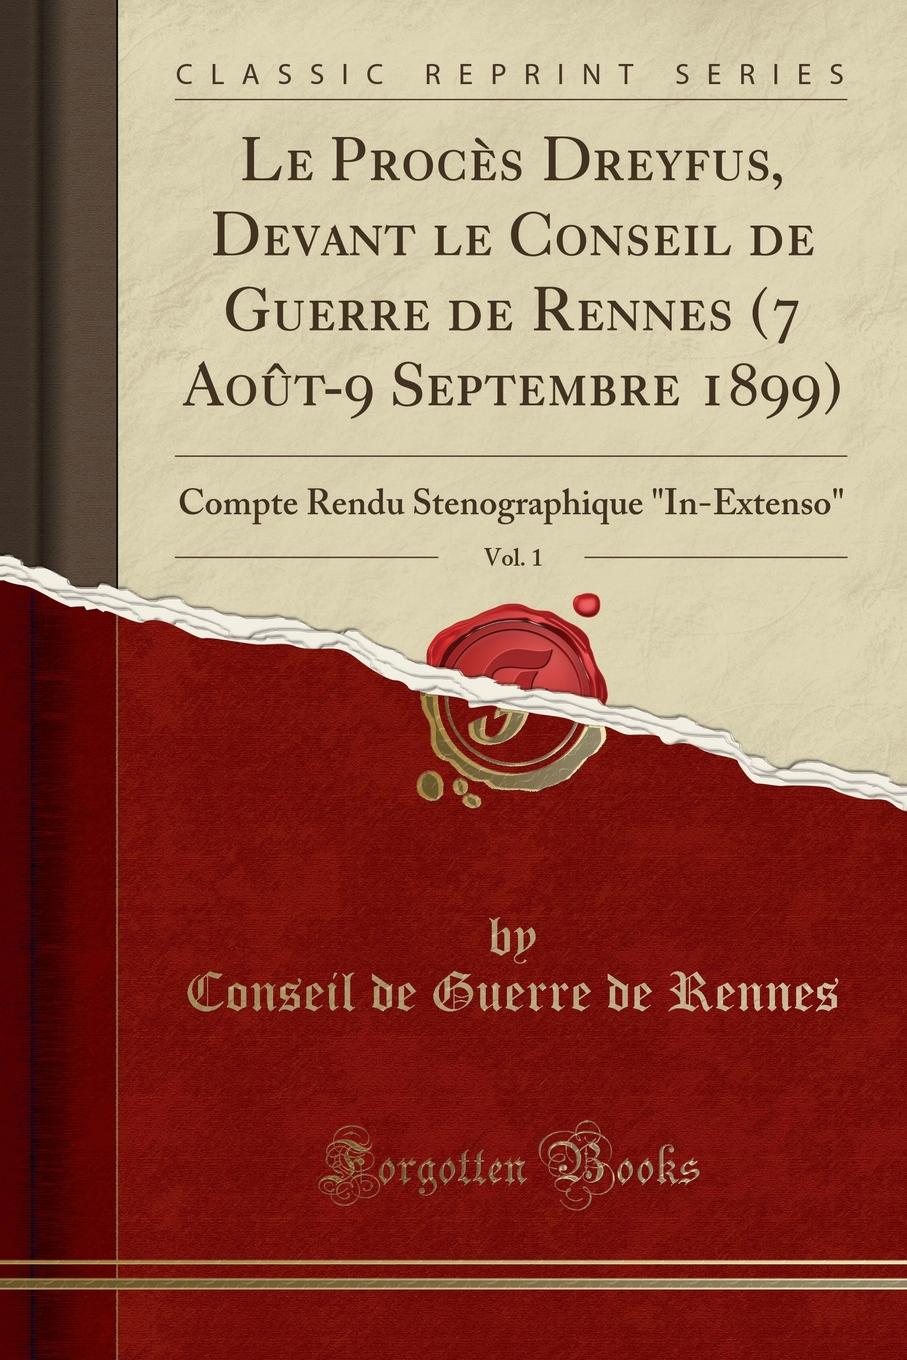 Conseil de Guerre de Rennes Le Proces Dreyfus, Devant le Conseil de Guerre de Rennes (7 Aout-9 Septembre 1899), Vol. 1. Compte Rendu Stenographique 